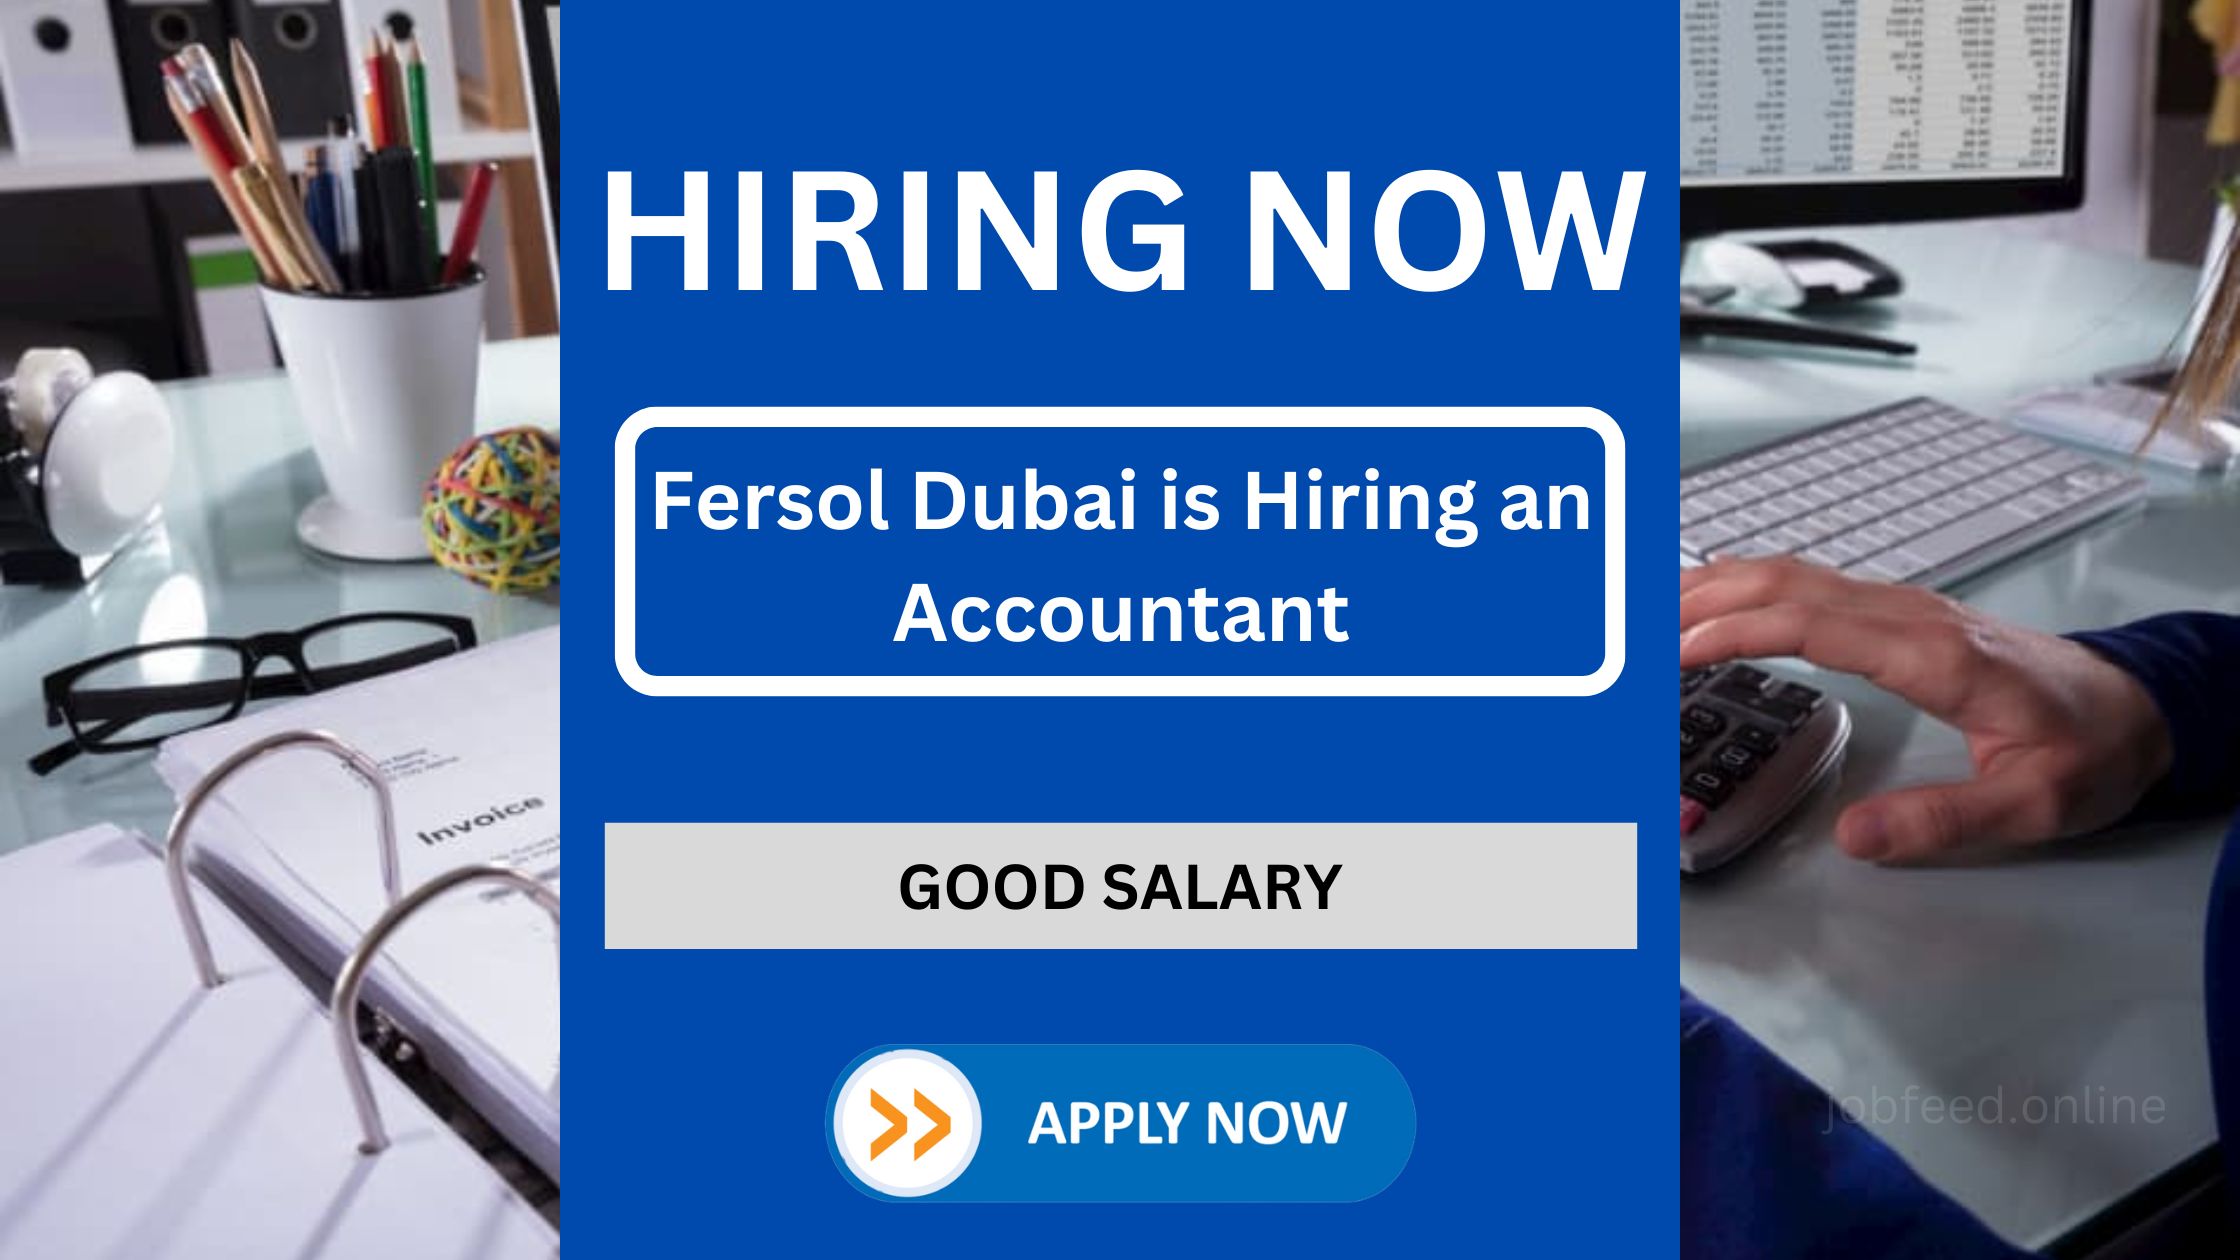 Fersol Dubai is Hiring an Accountant